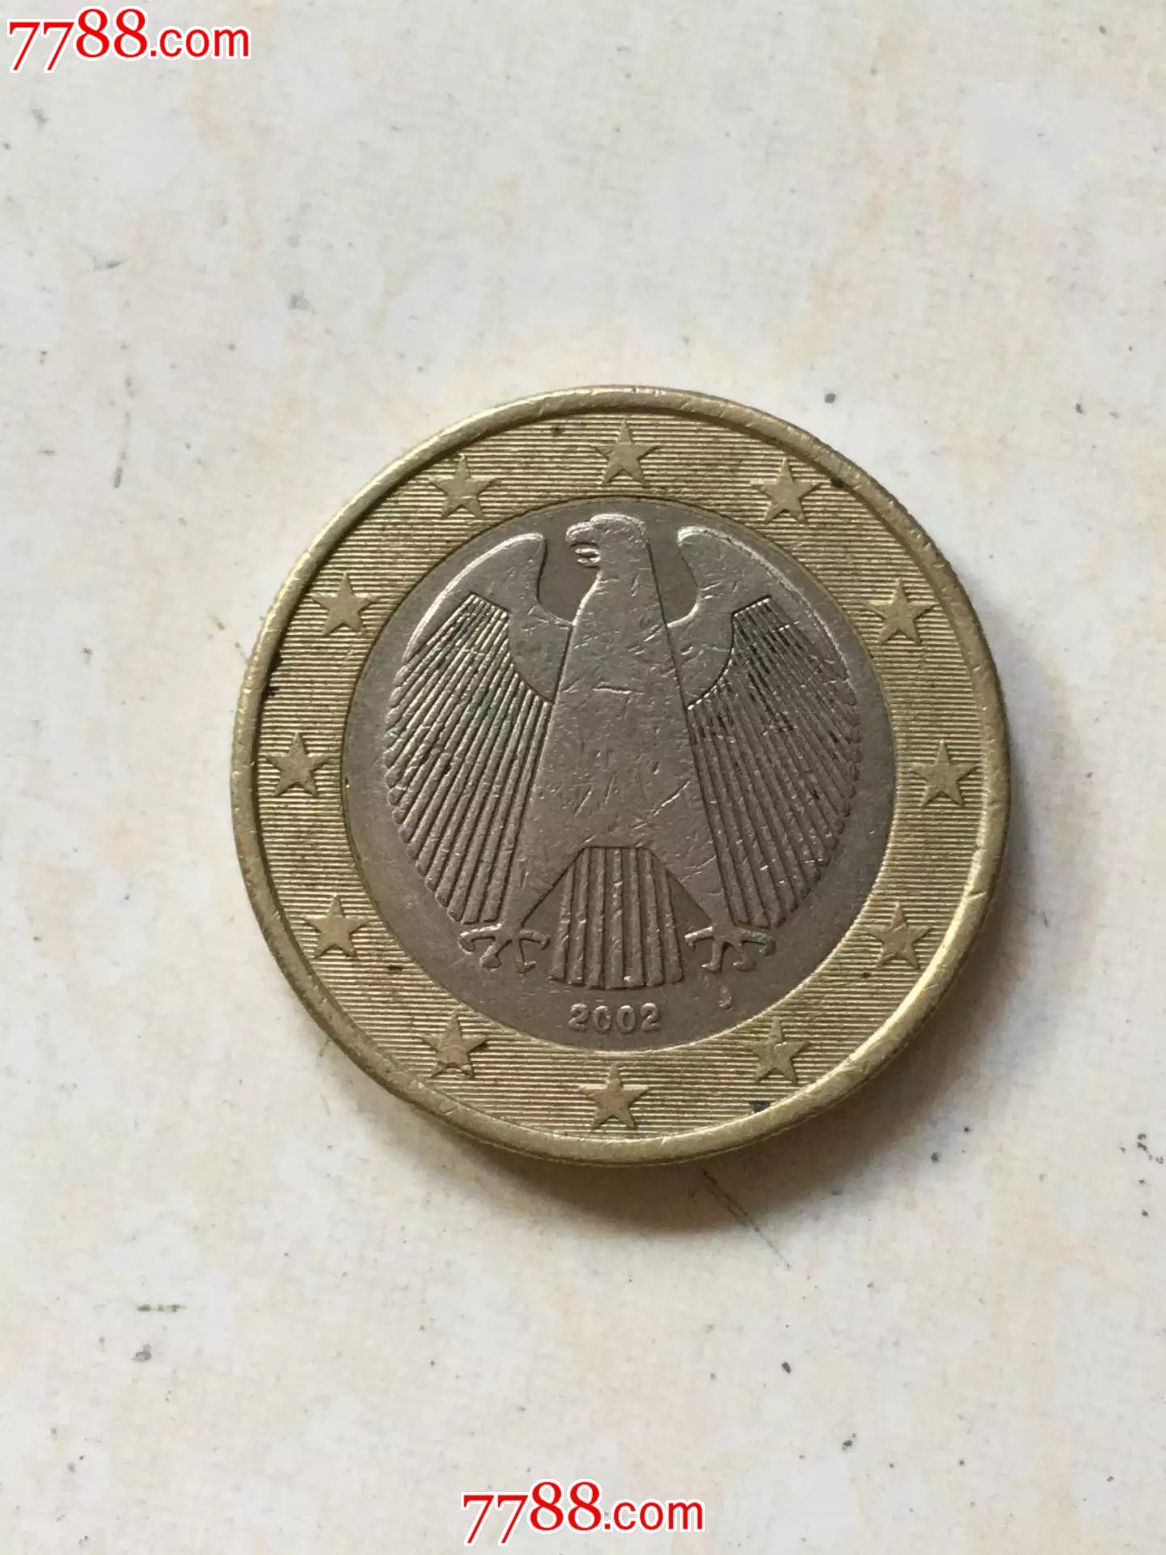 2002年德国1欧元j版